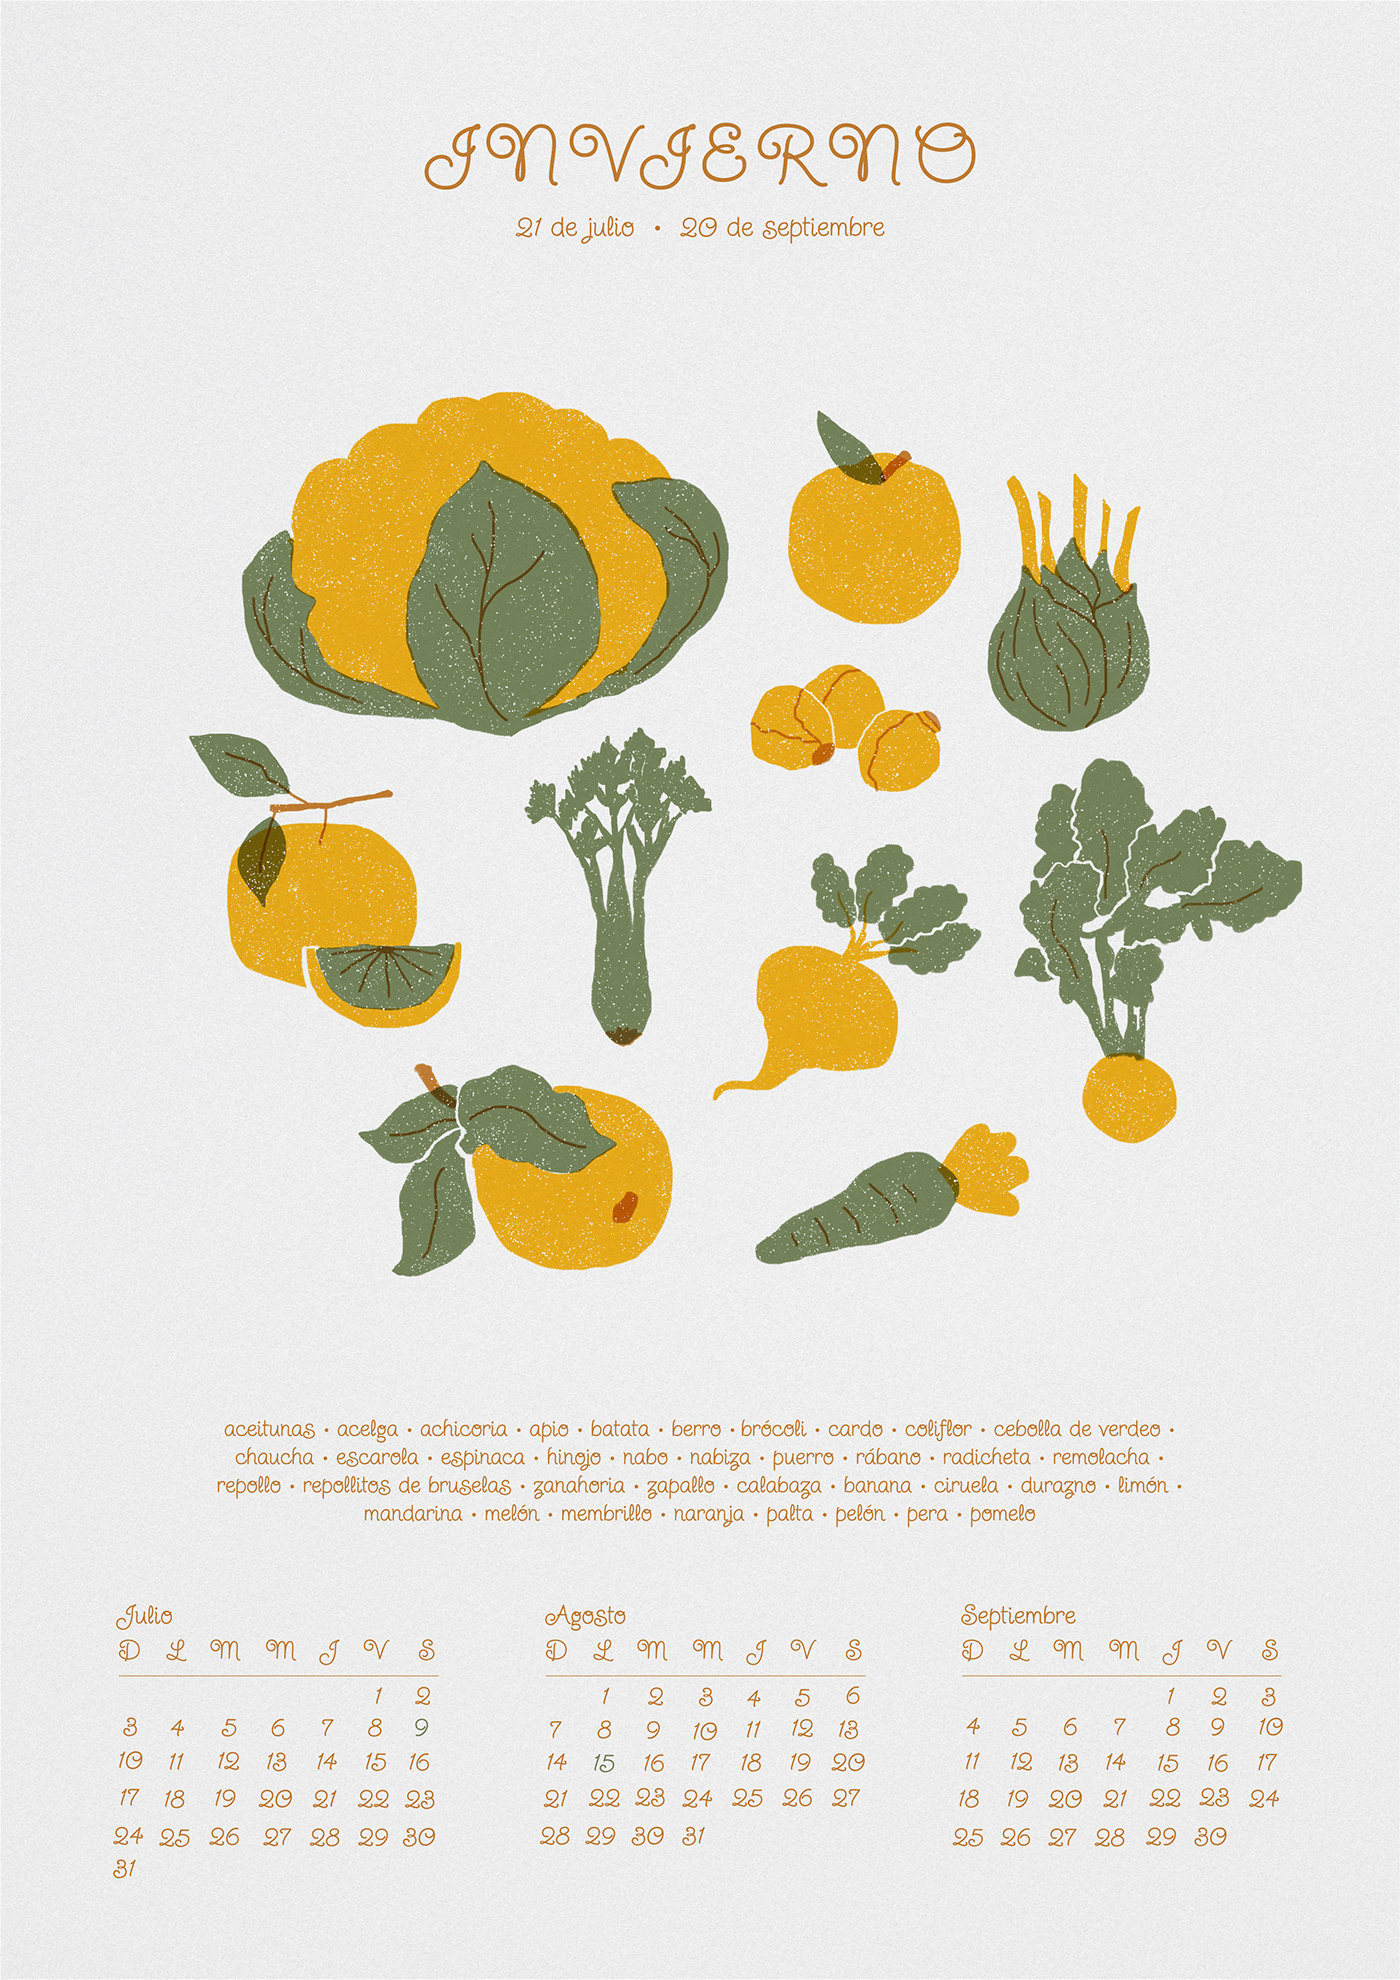 Digital Art  Food  Fruit ILLUSTRATION  Poster Design risograph serigrafia Serigraphy vegetables wacom